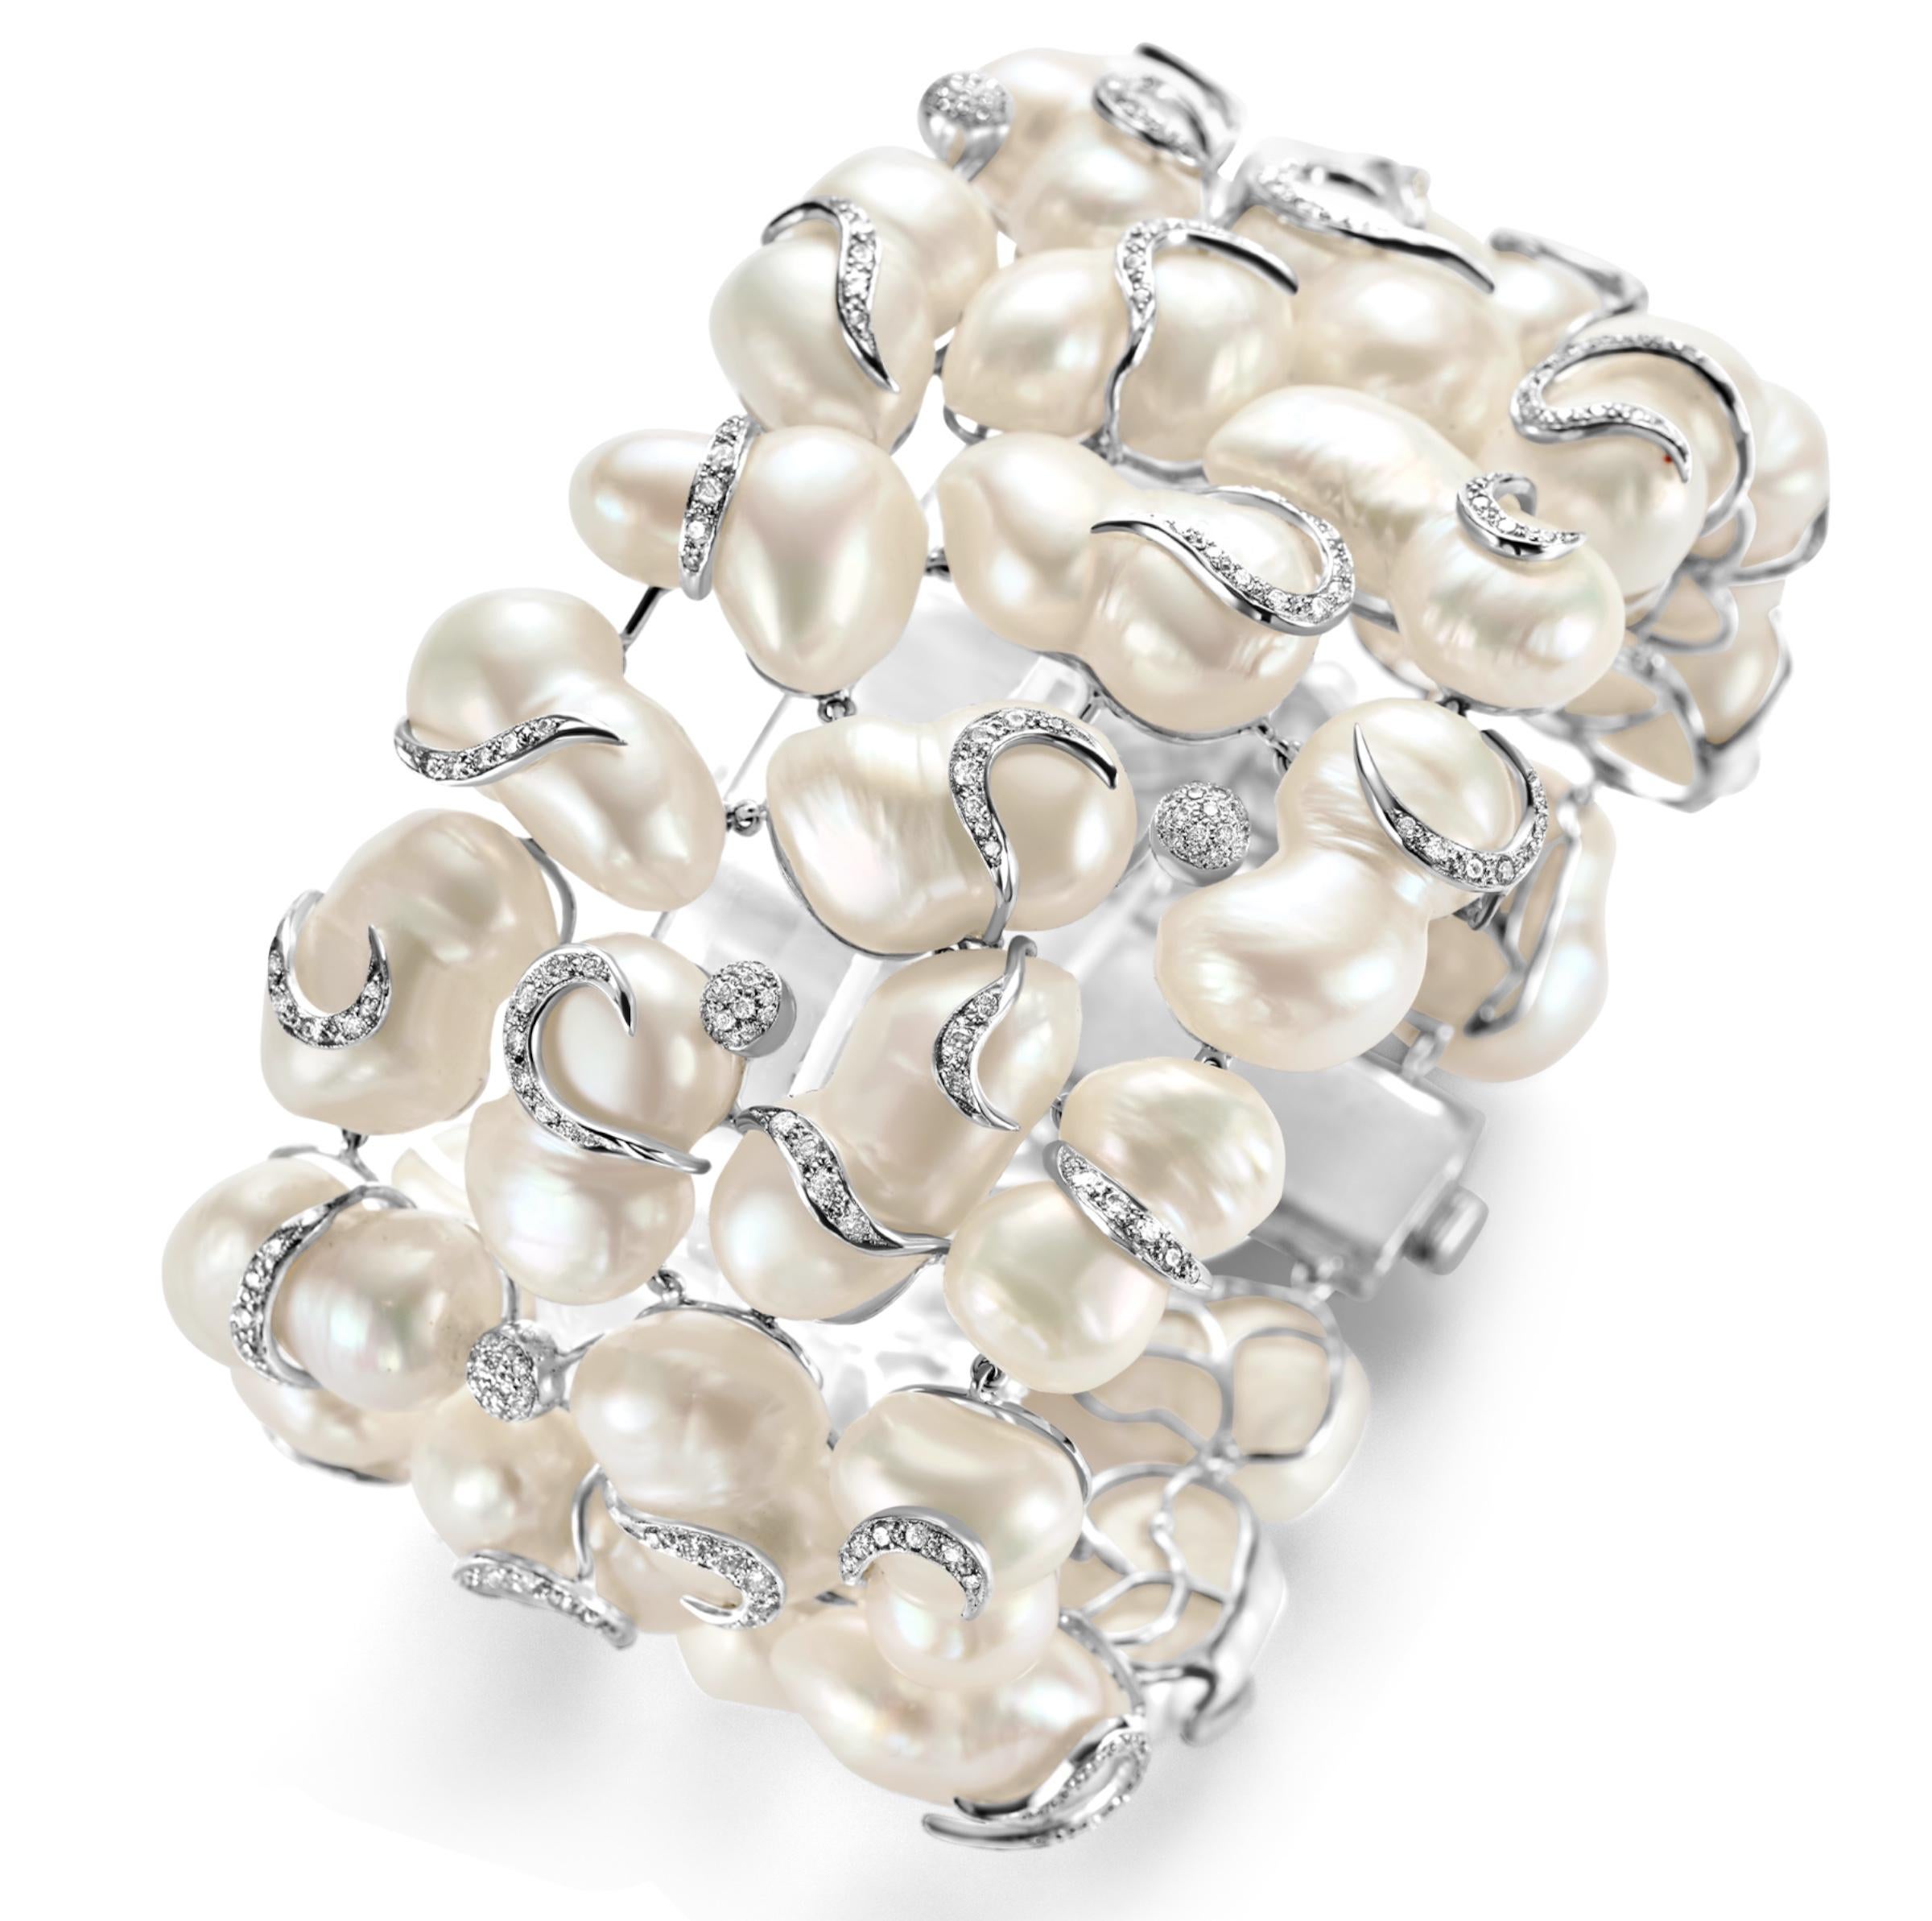 Ce bracelet Yvel est composé de diamants taille brillant de ca.5 ct et de perles d'eau douce. L'effet apaisant que procurent les perles et la brillance des diamants rendent cette pièce si unique. Chaque rangée de diamants est dirigée vers un côté